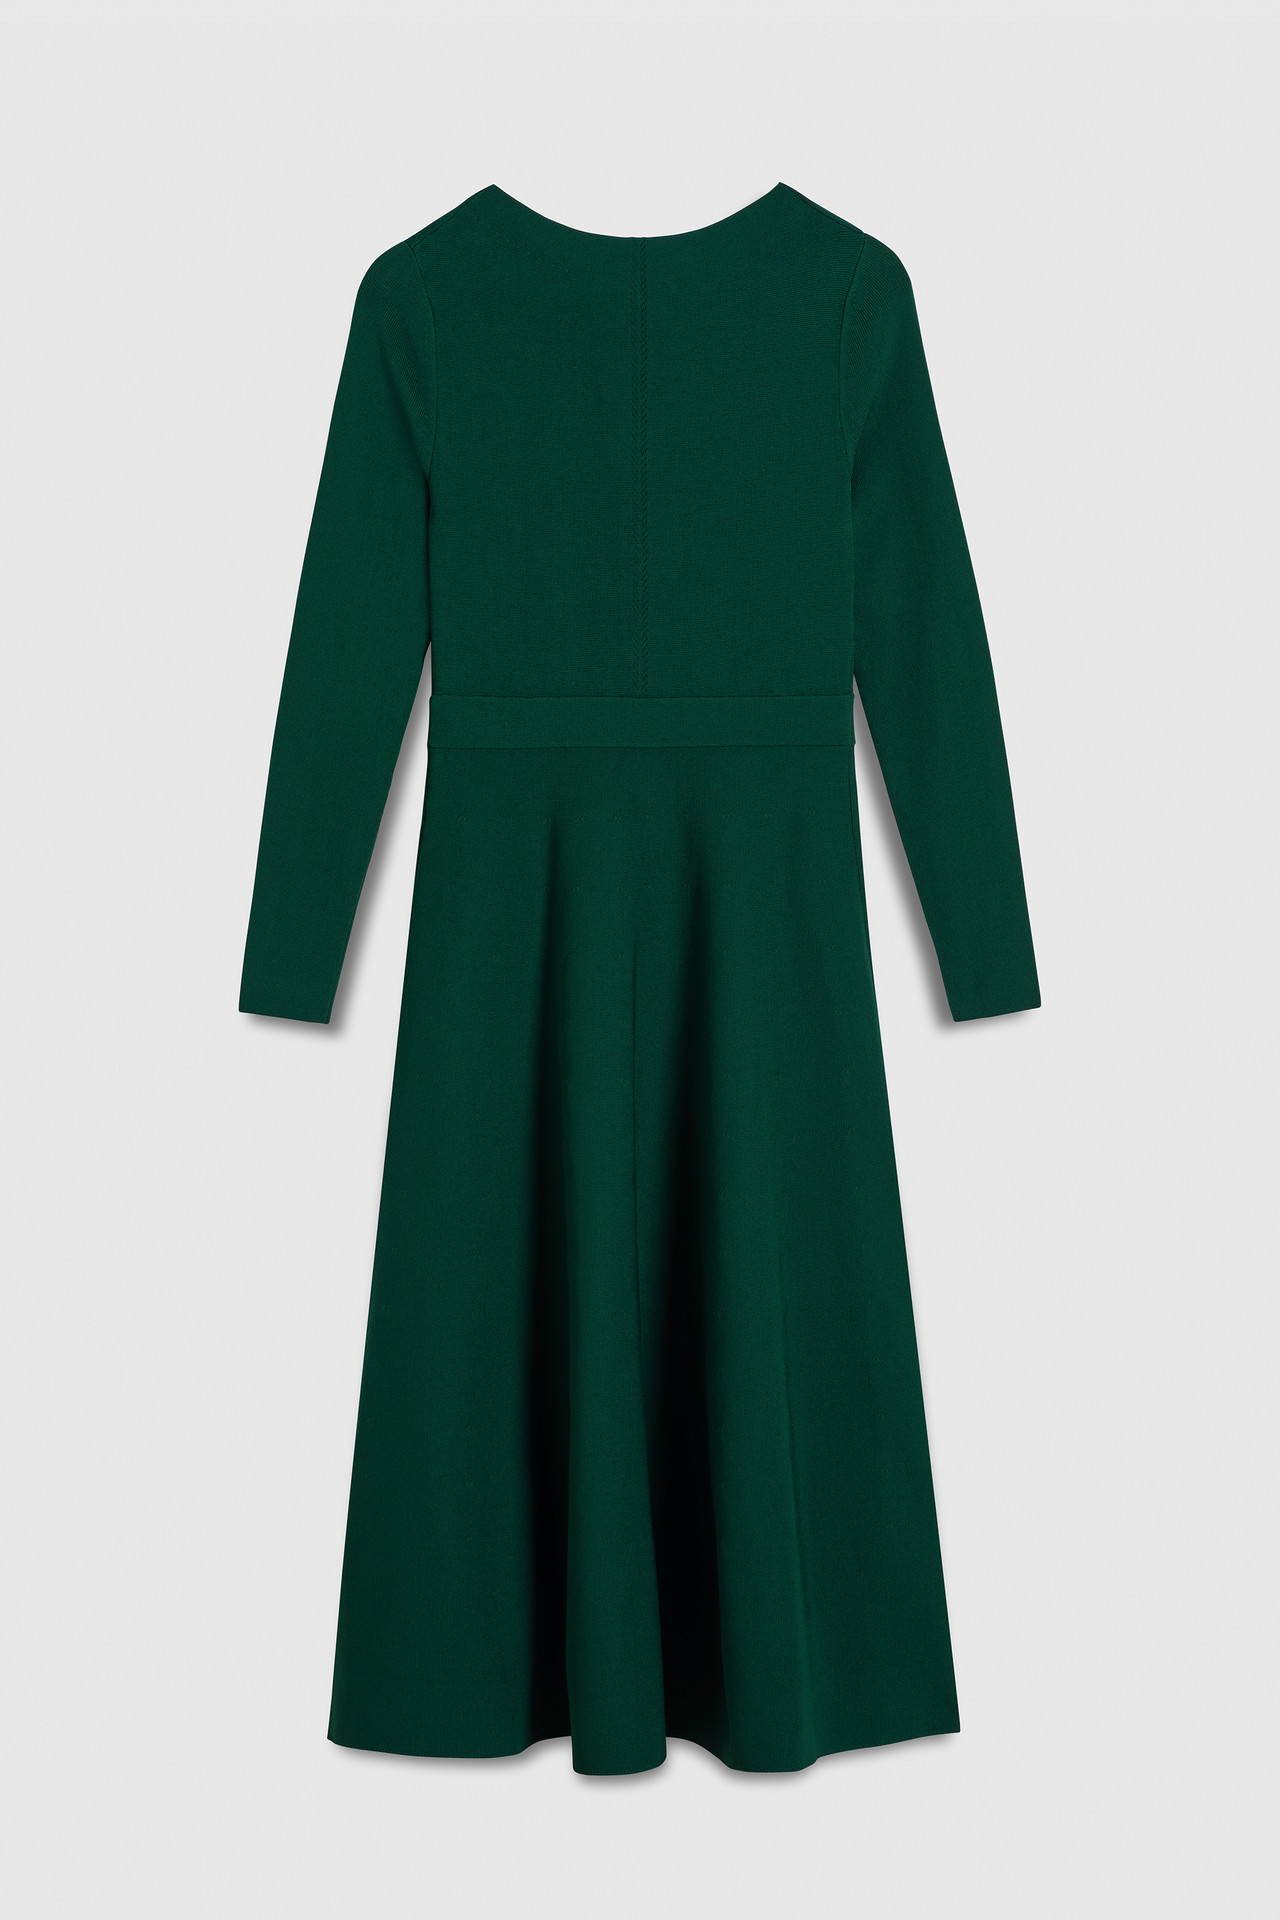 Bellaria Dress Jewel Green Sculpt Knit - Welcome to the Fold LTD